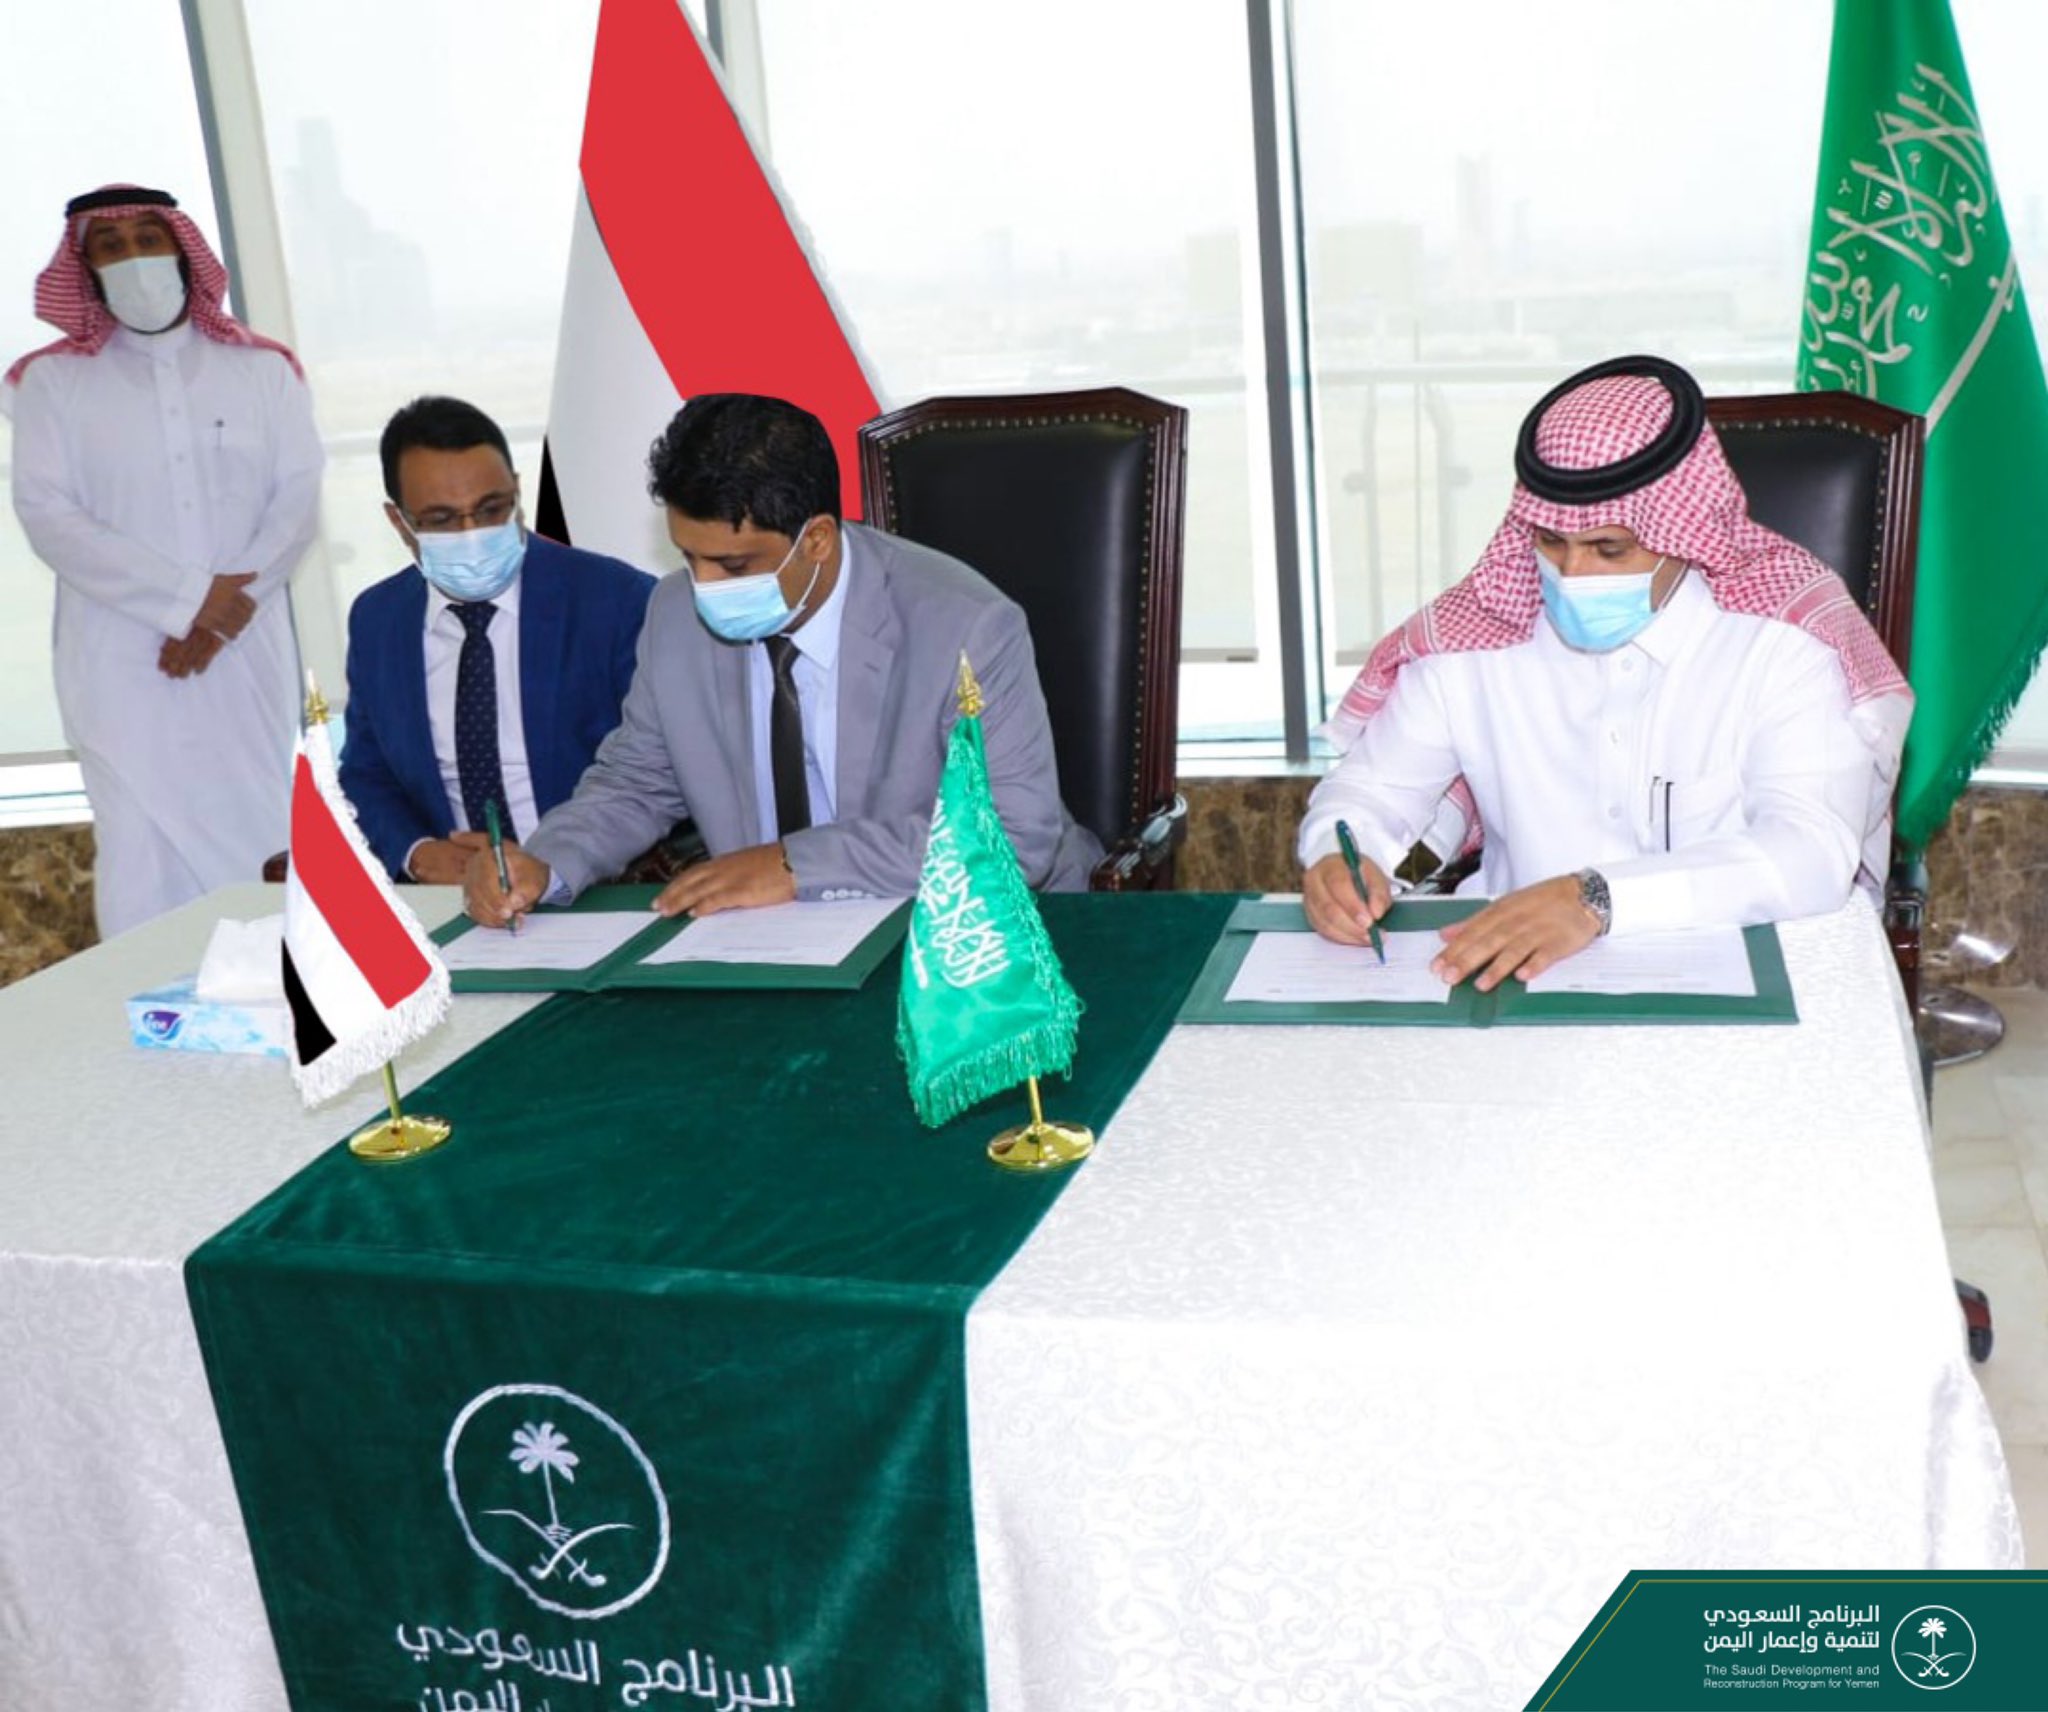 السعودية واليمن توقعان اتفاقية توريد مشتقات نفطية لتشغيل أكثر من 80 محطة كهربائية